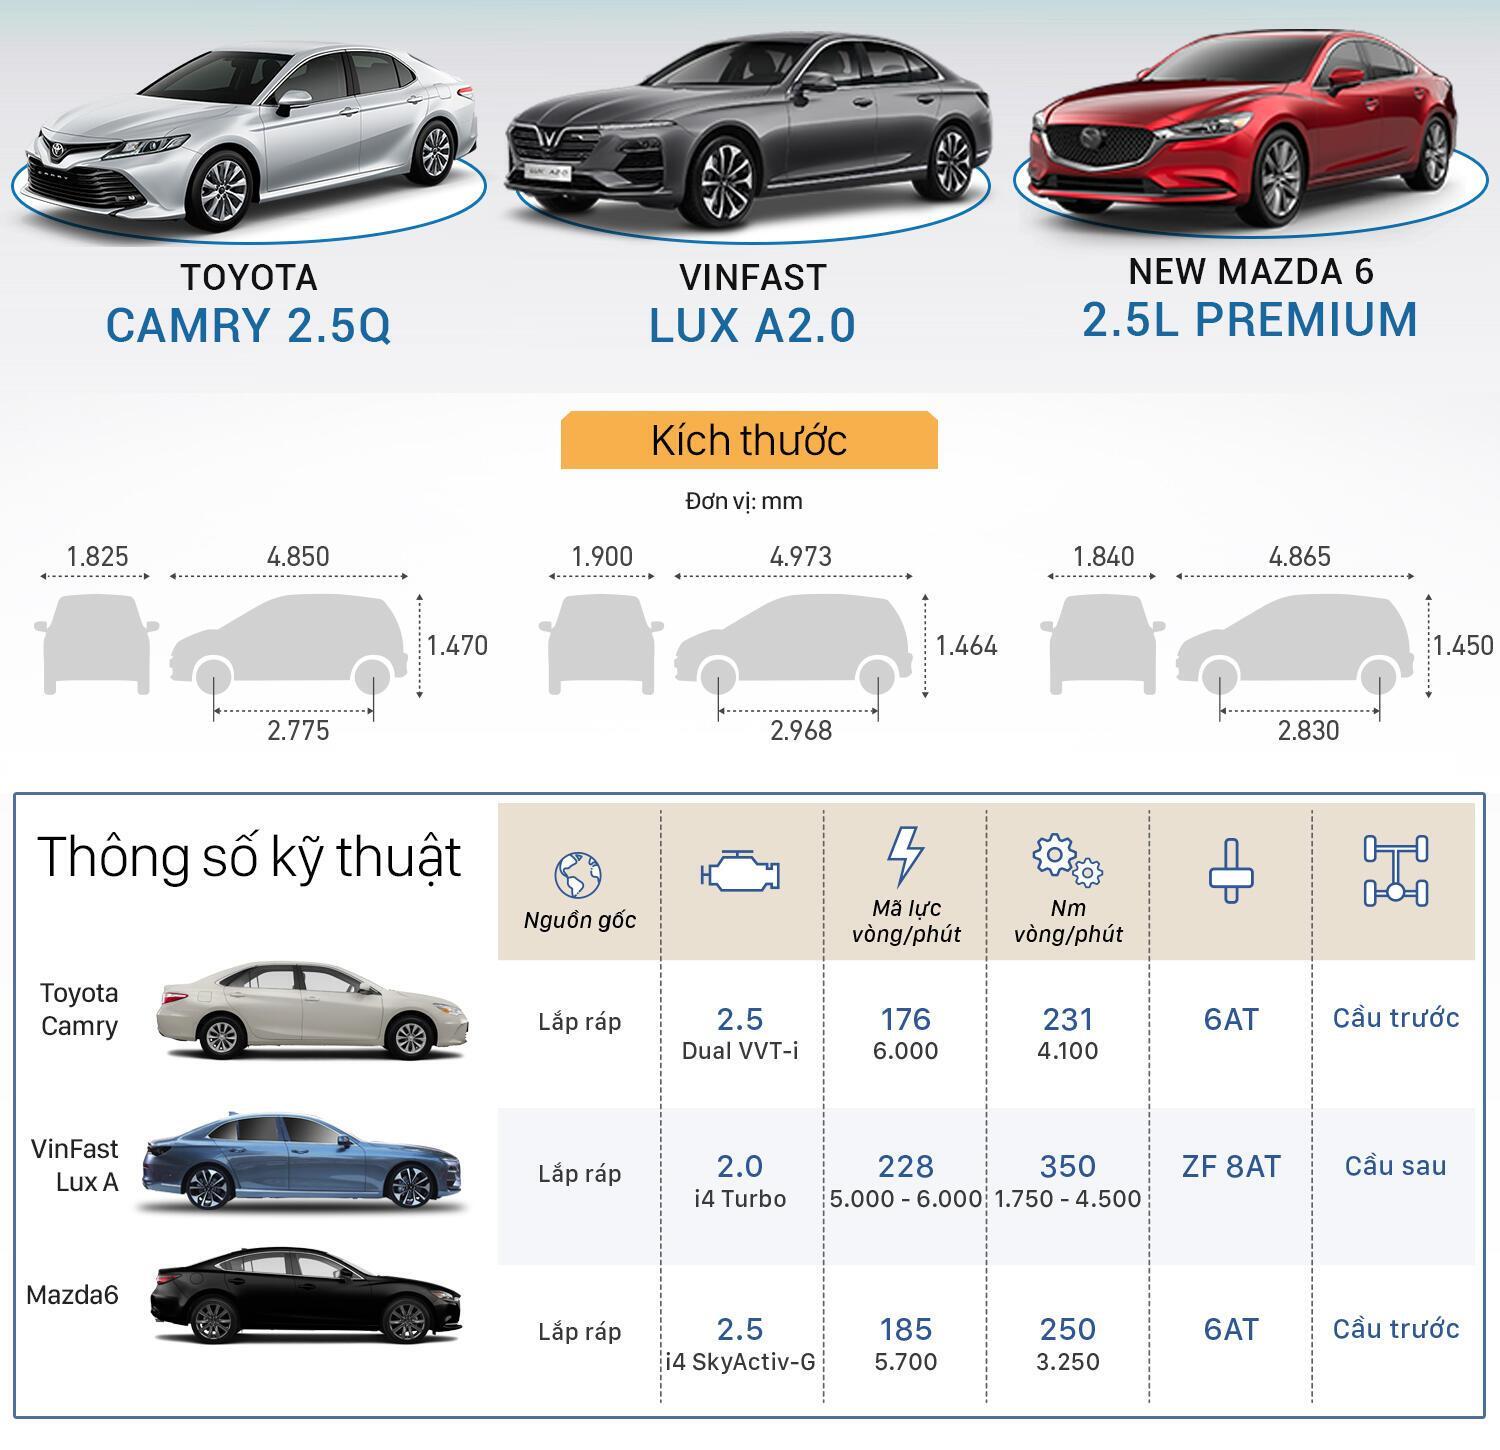 So sánh kích thước VinFast Lux A2.0 với Toyota Camry và New Mazda 6